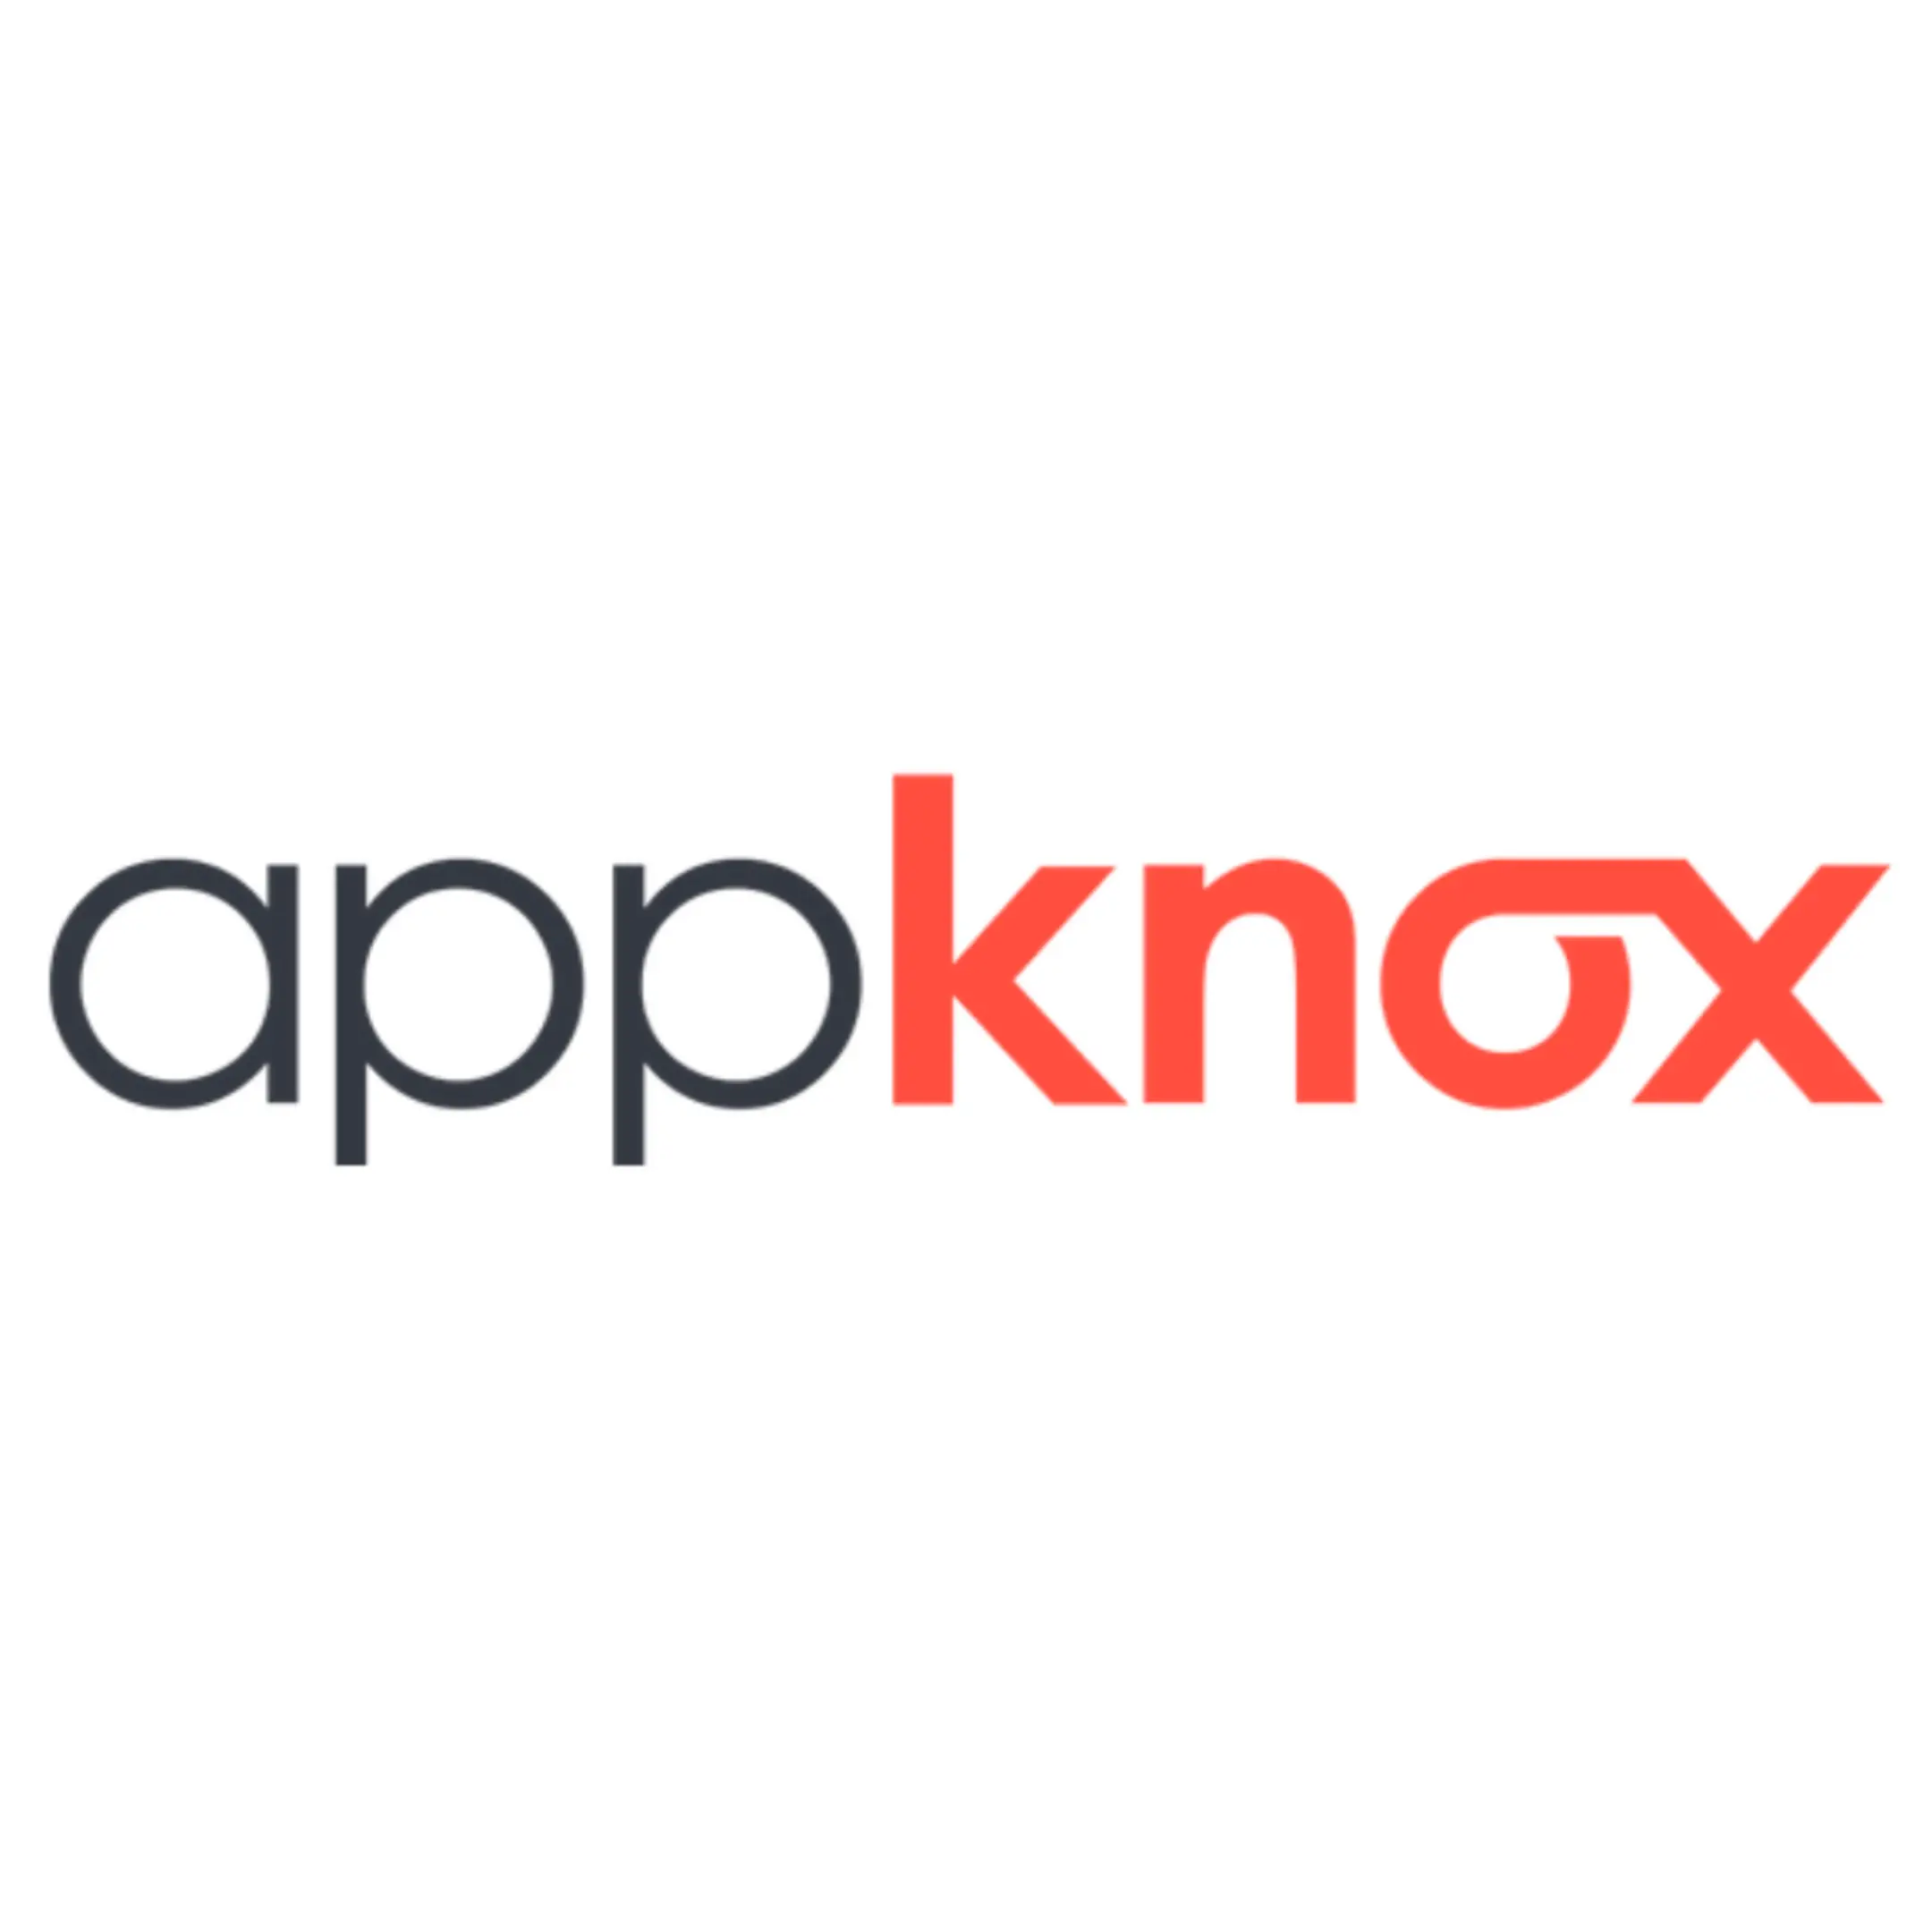 Appknox's logo